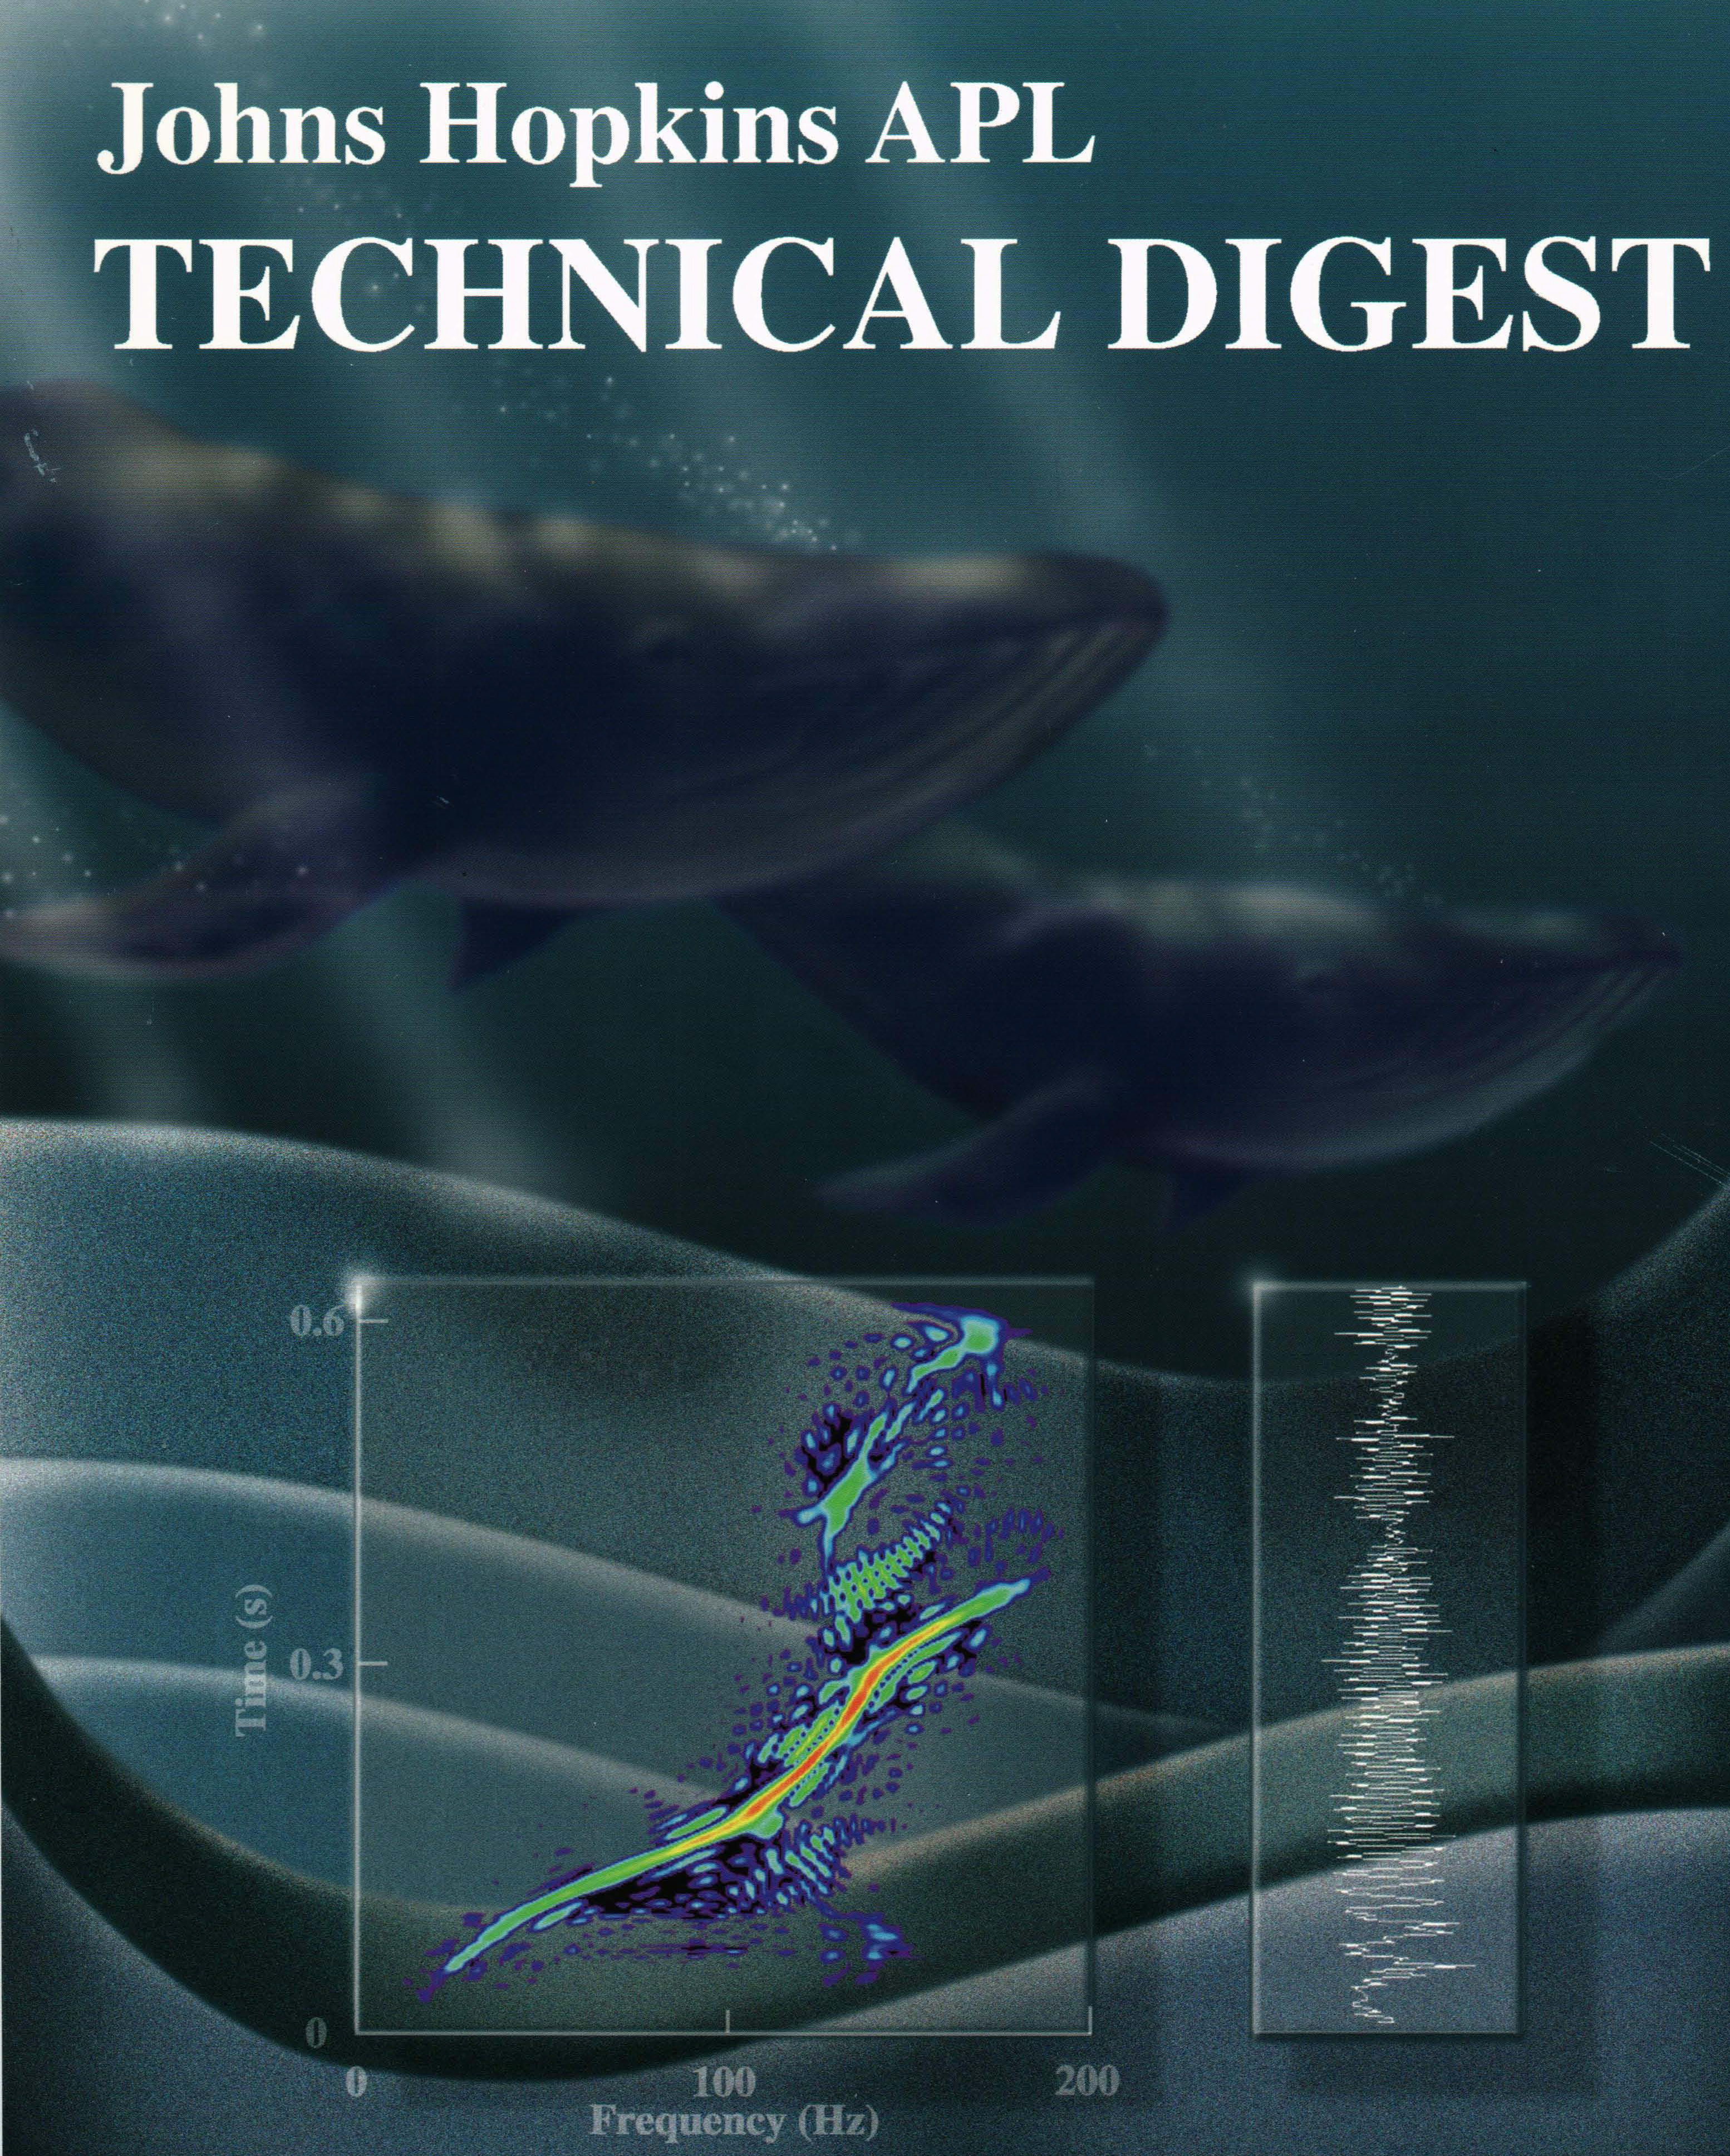 Tech Digest Vol.15 Num.4 Cover